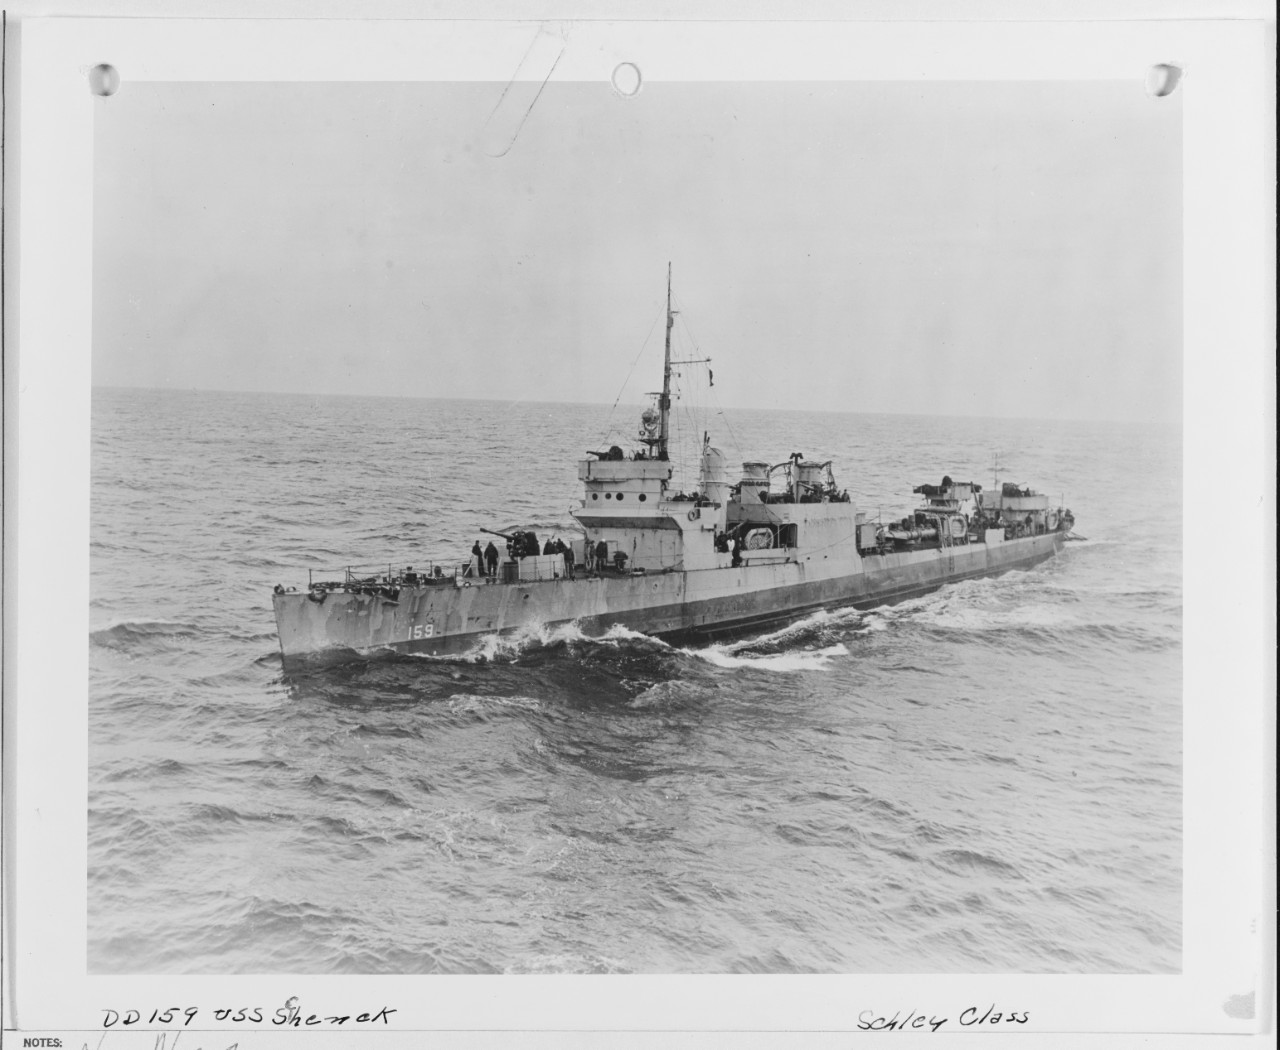 USS SCHENCK (DD-159)